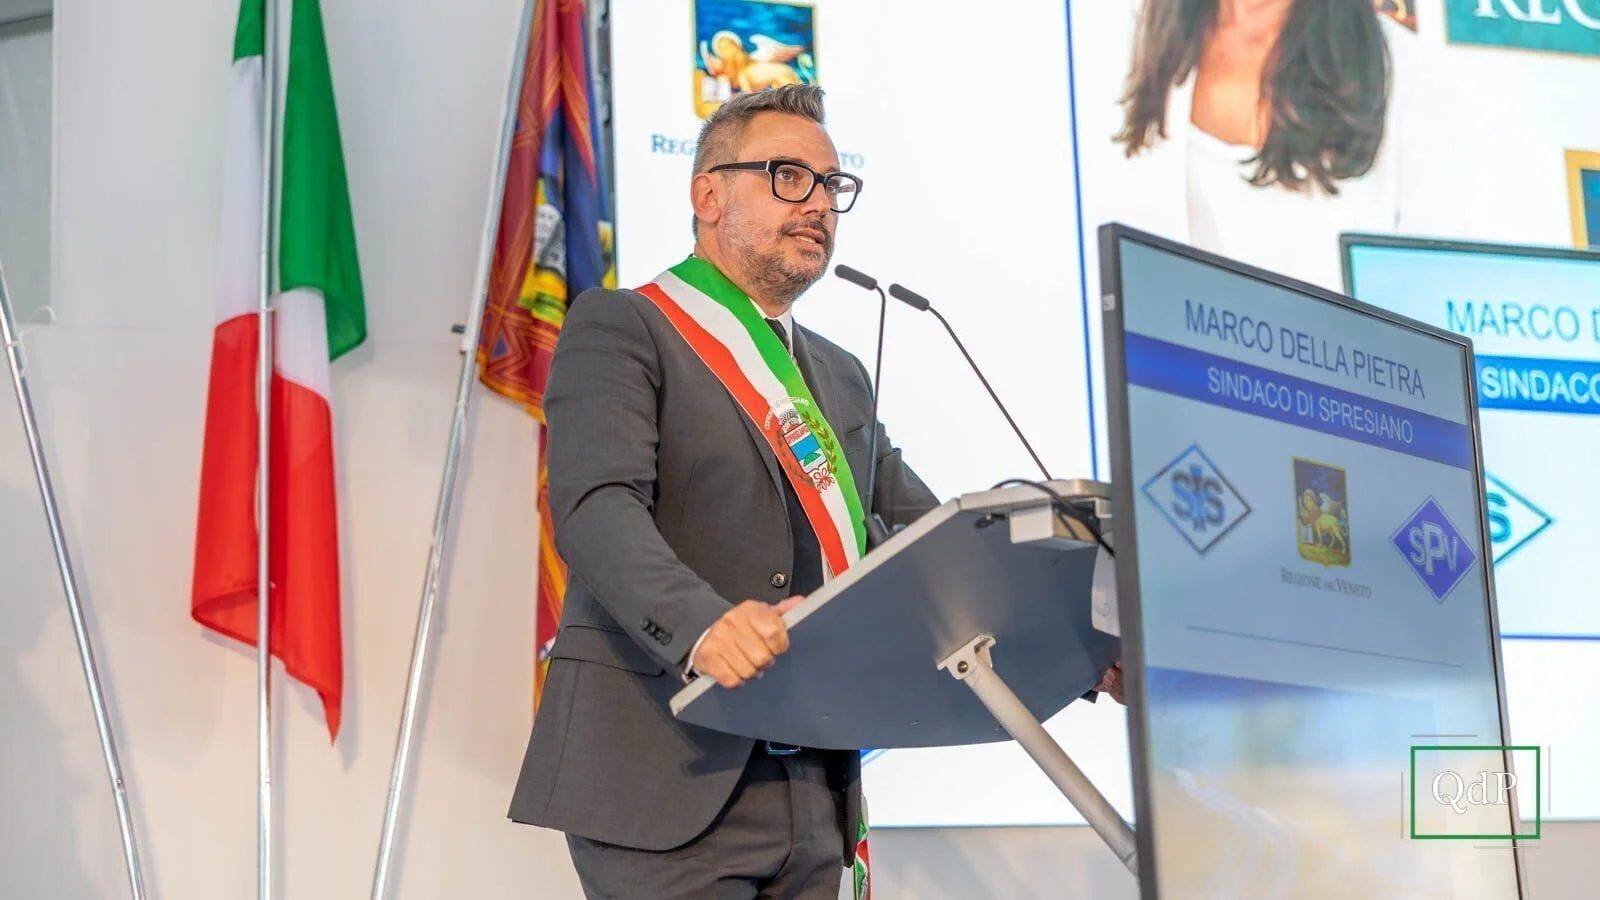  Marco Della Pietra, presidente Centro Studi Amministrativi della Marca Trevigiana